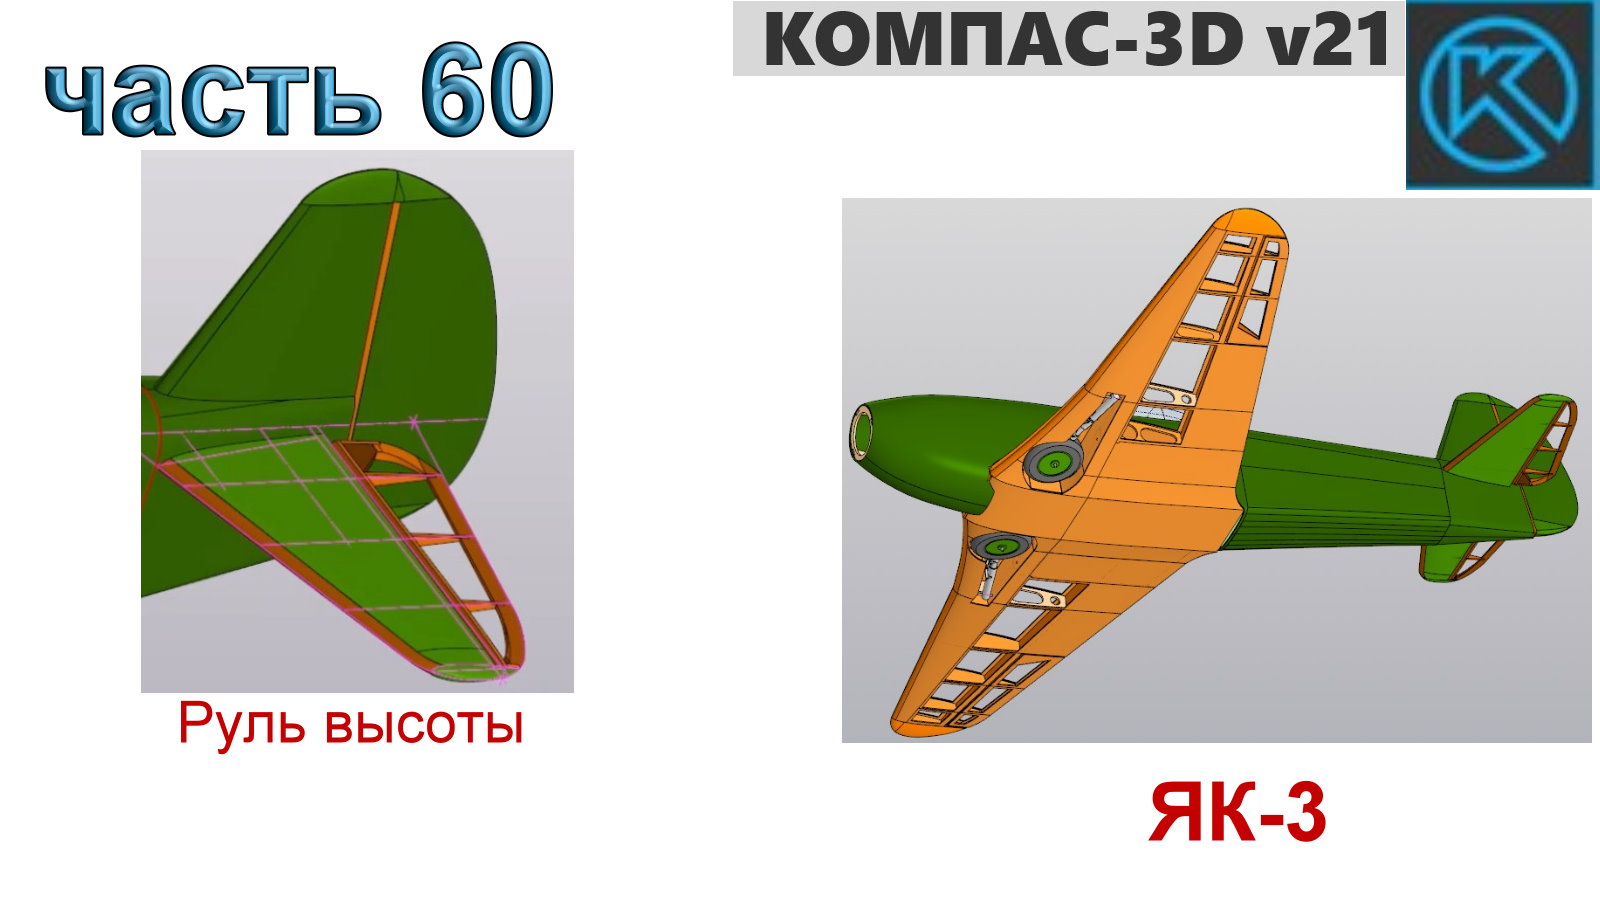 Радиоуправляемая модель самолета ЯК-3_1250мм (часть 60)